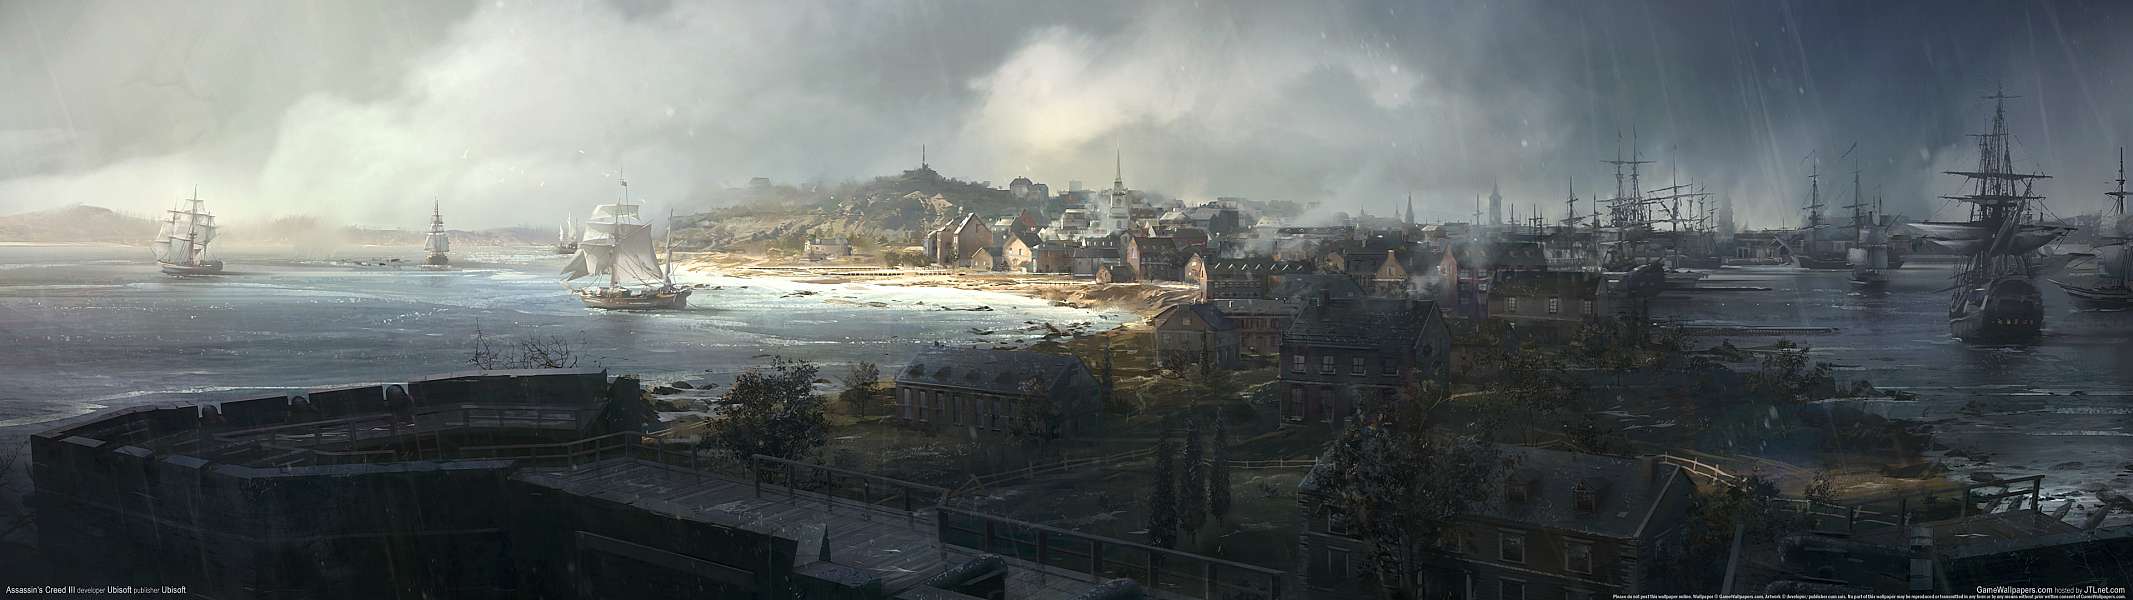 Assassin's Creed III dual screen fond d'écran